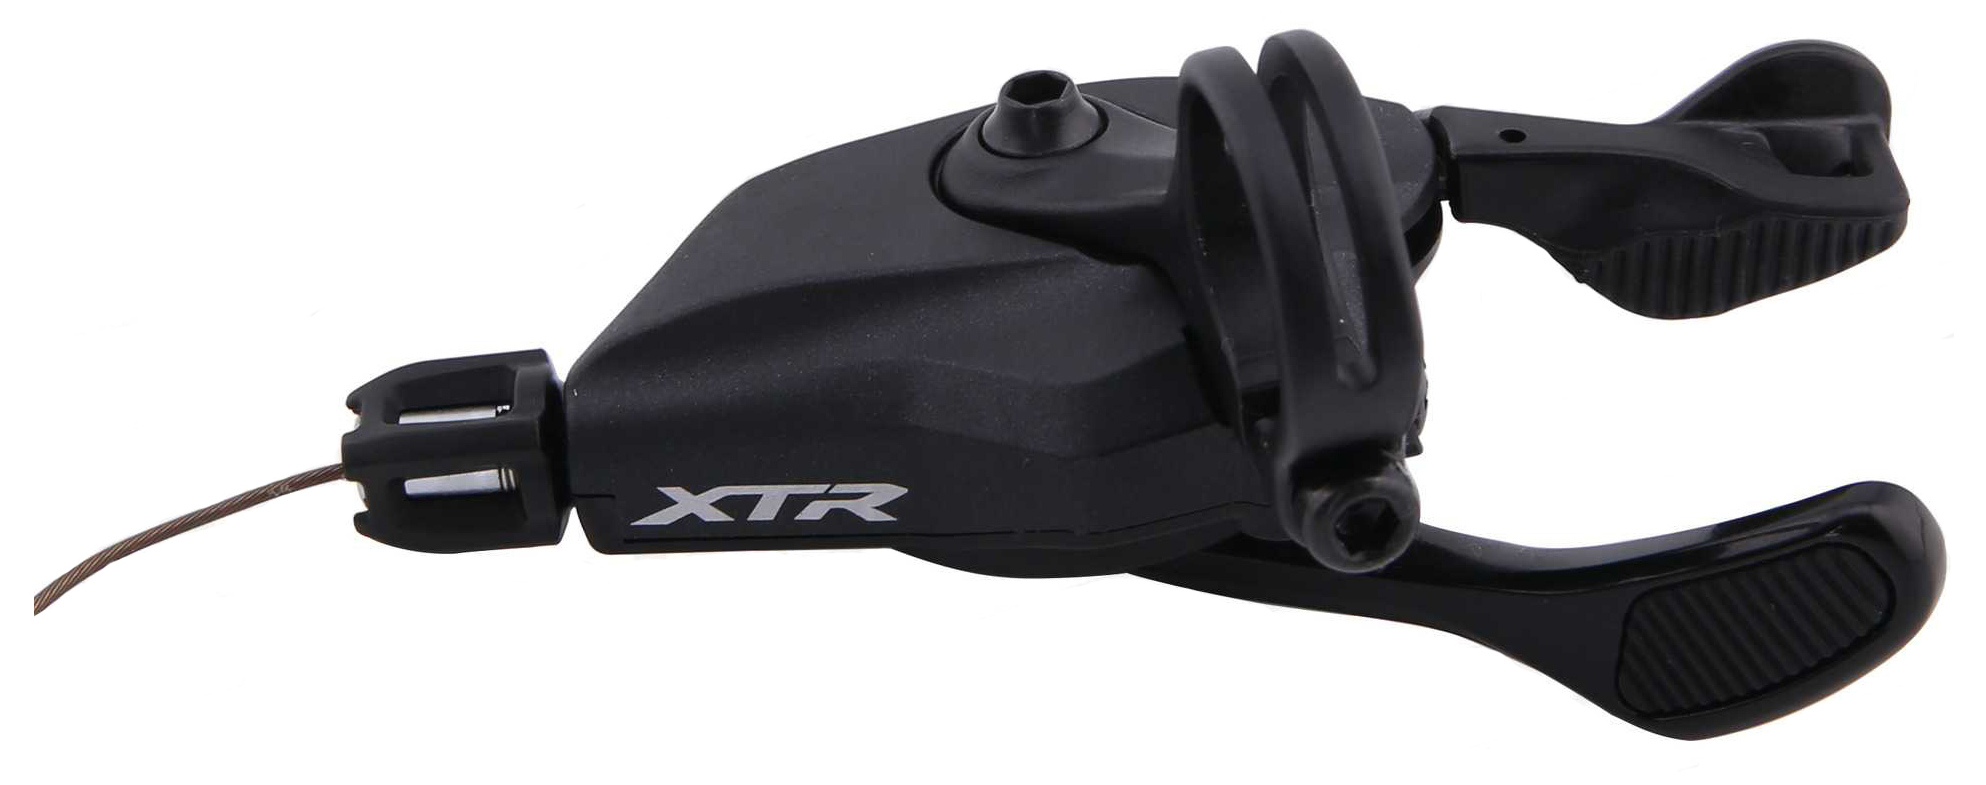  Шифтер для велосипеда Shimano XTR M9100, 11/12ск (ISLM9100RAP)